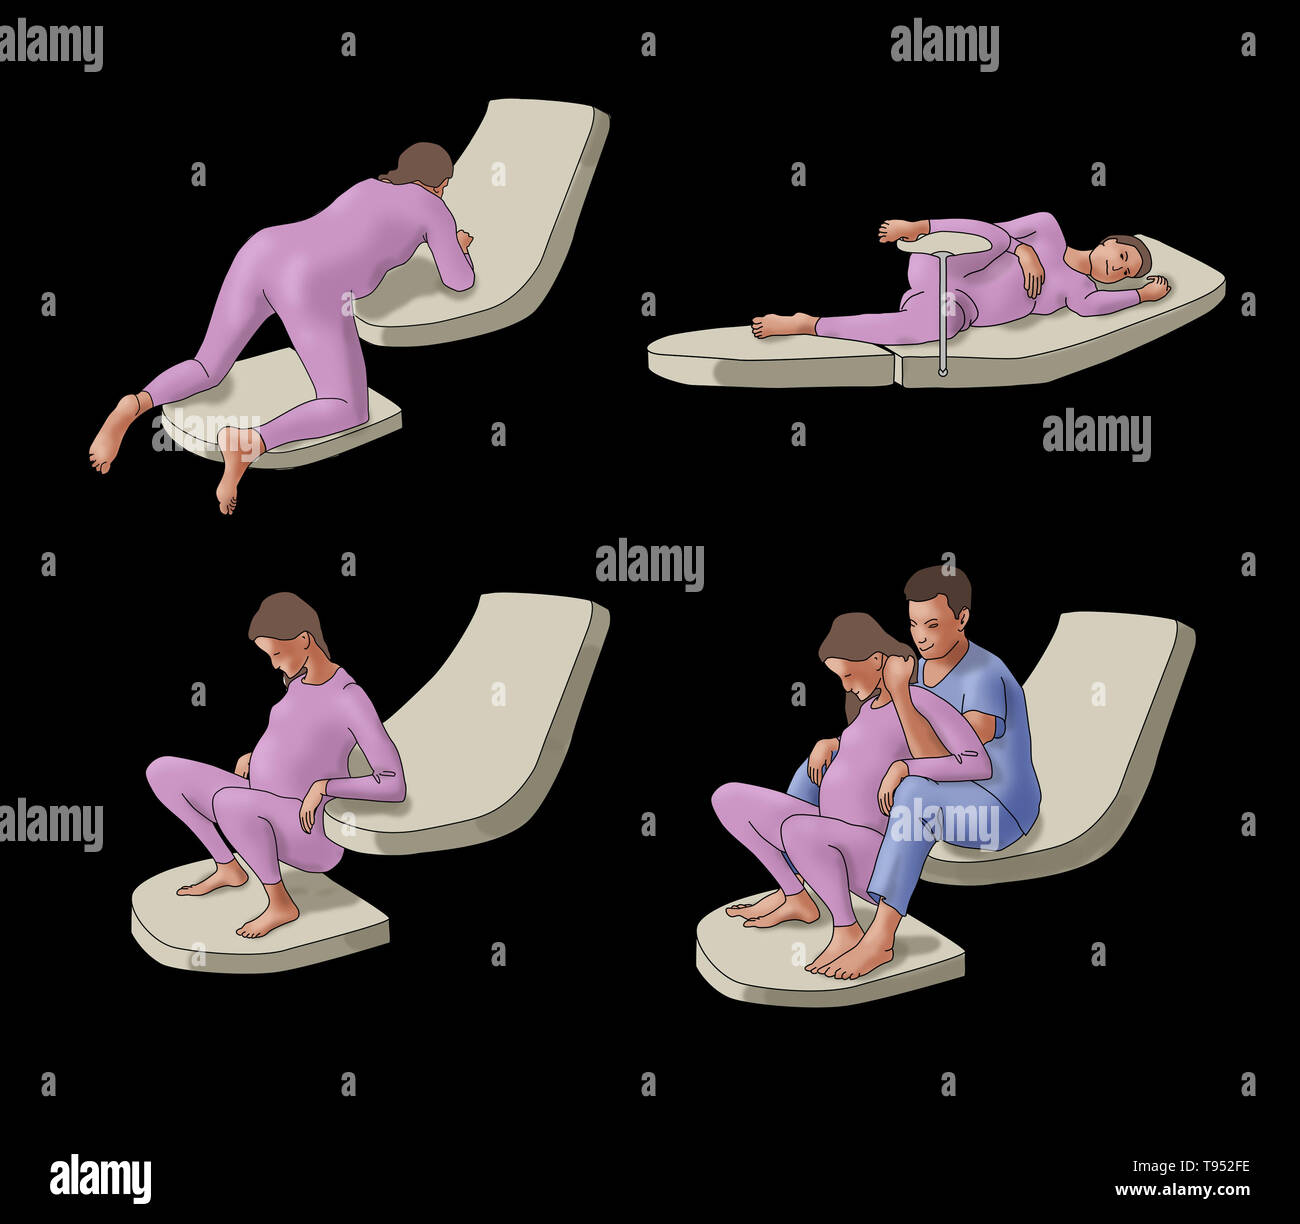 Abbildung: Vier verschiedene Geburtspositionen: allen Vieren, liegen, hocken, und Hausbesetzung mit einem Partner. Stockfoto